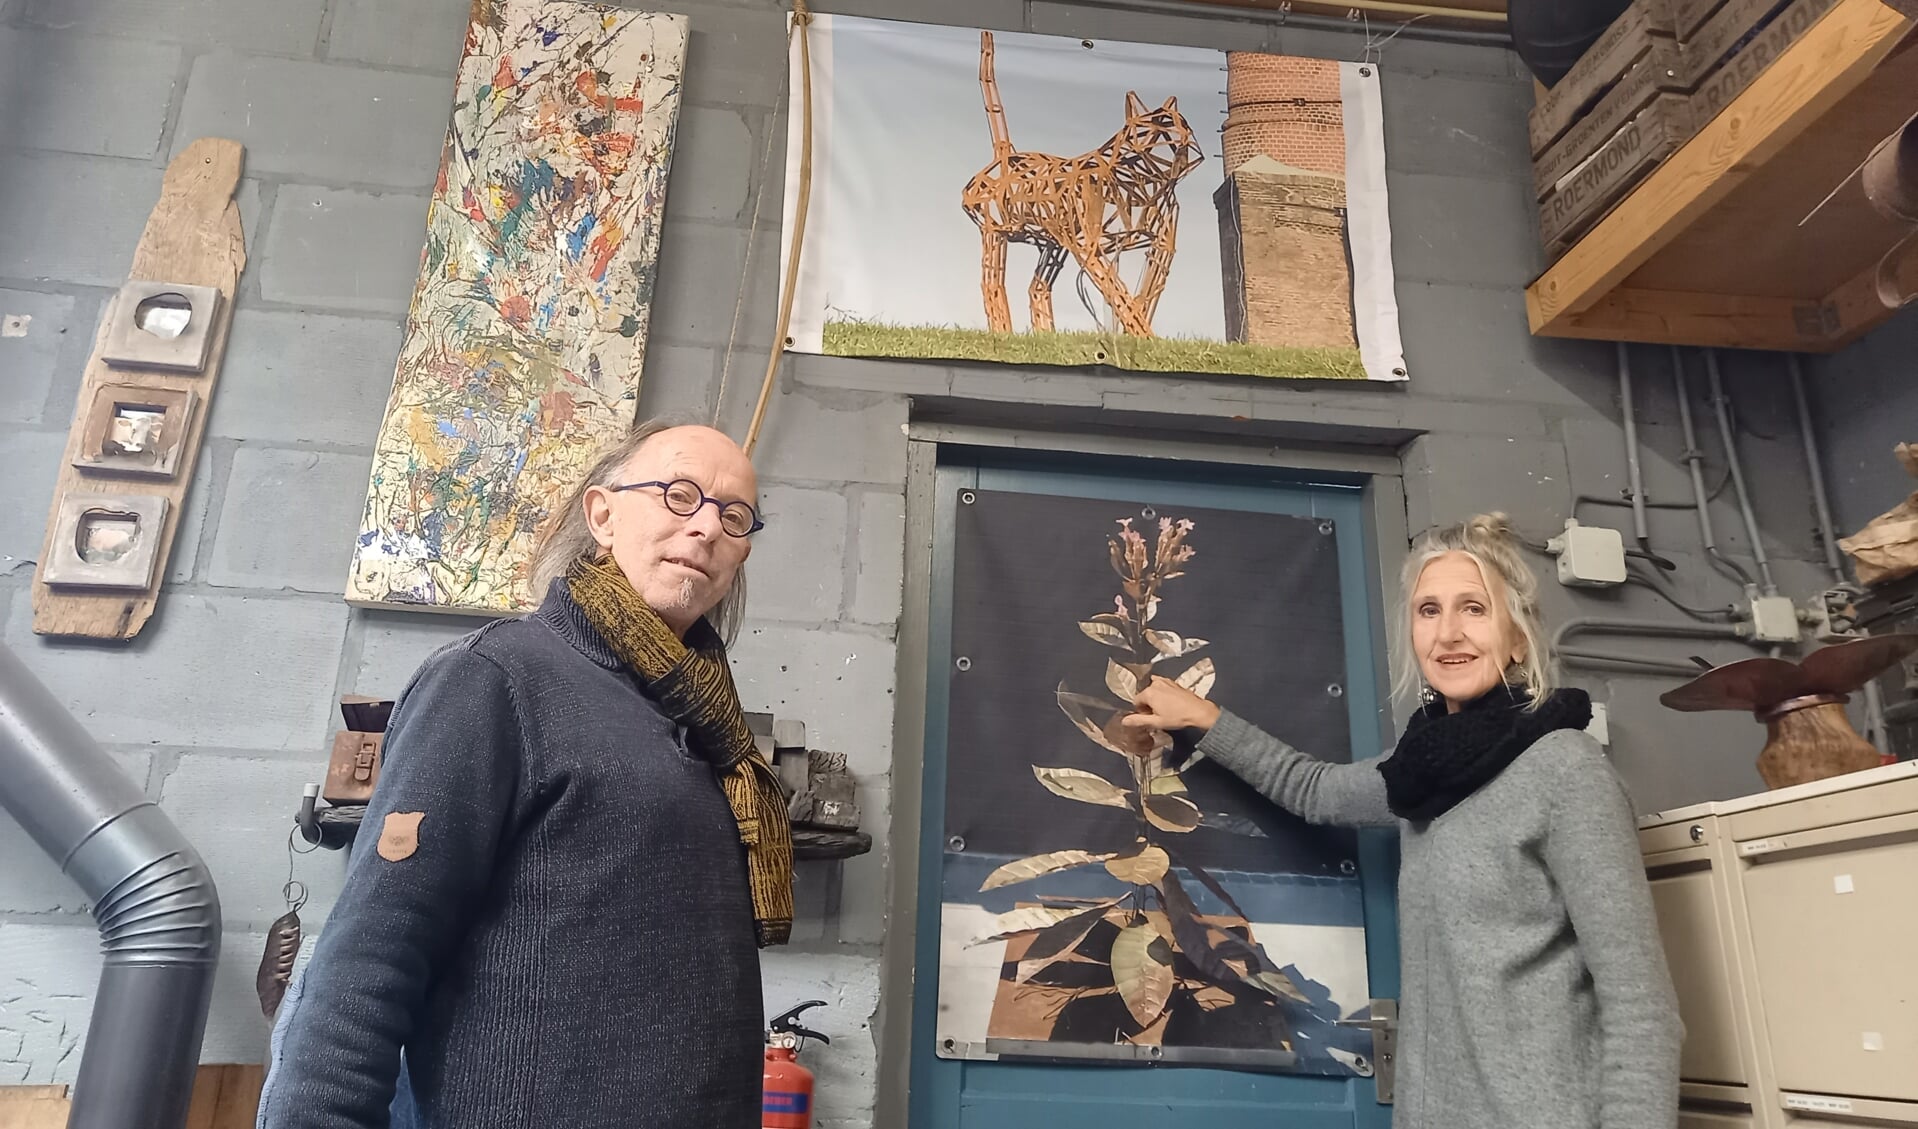 Les artistes Pieter et Suzanne échangent Veenendaal contre la France